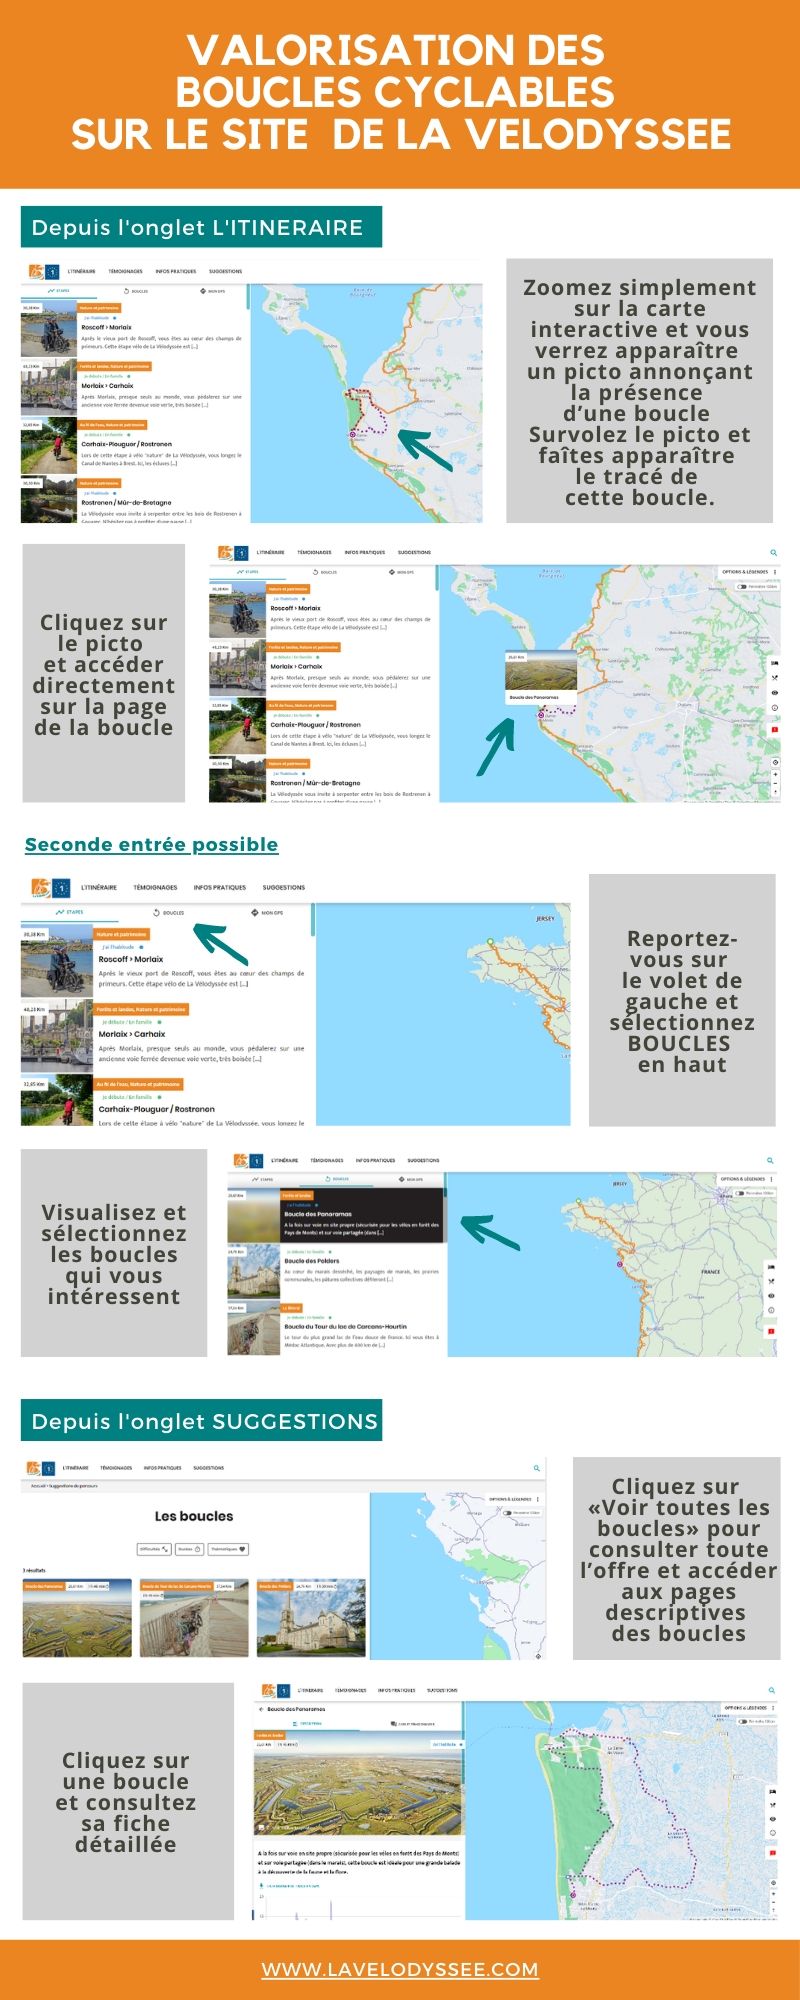 Valorisation des boucles sur le site Internet de La Vélodyssée